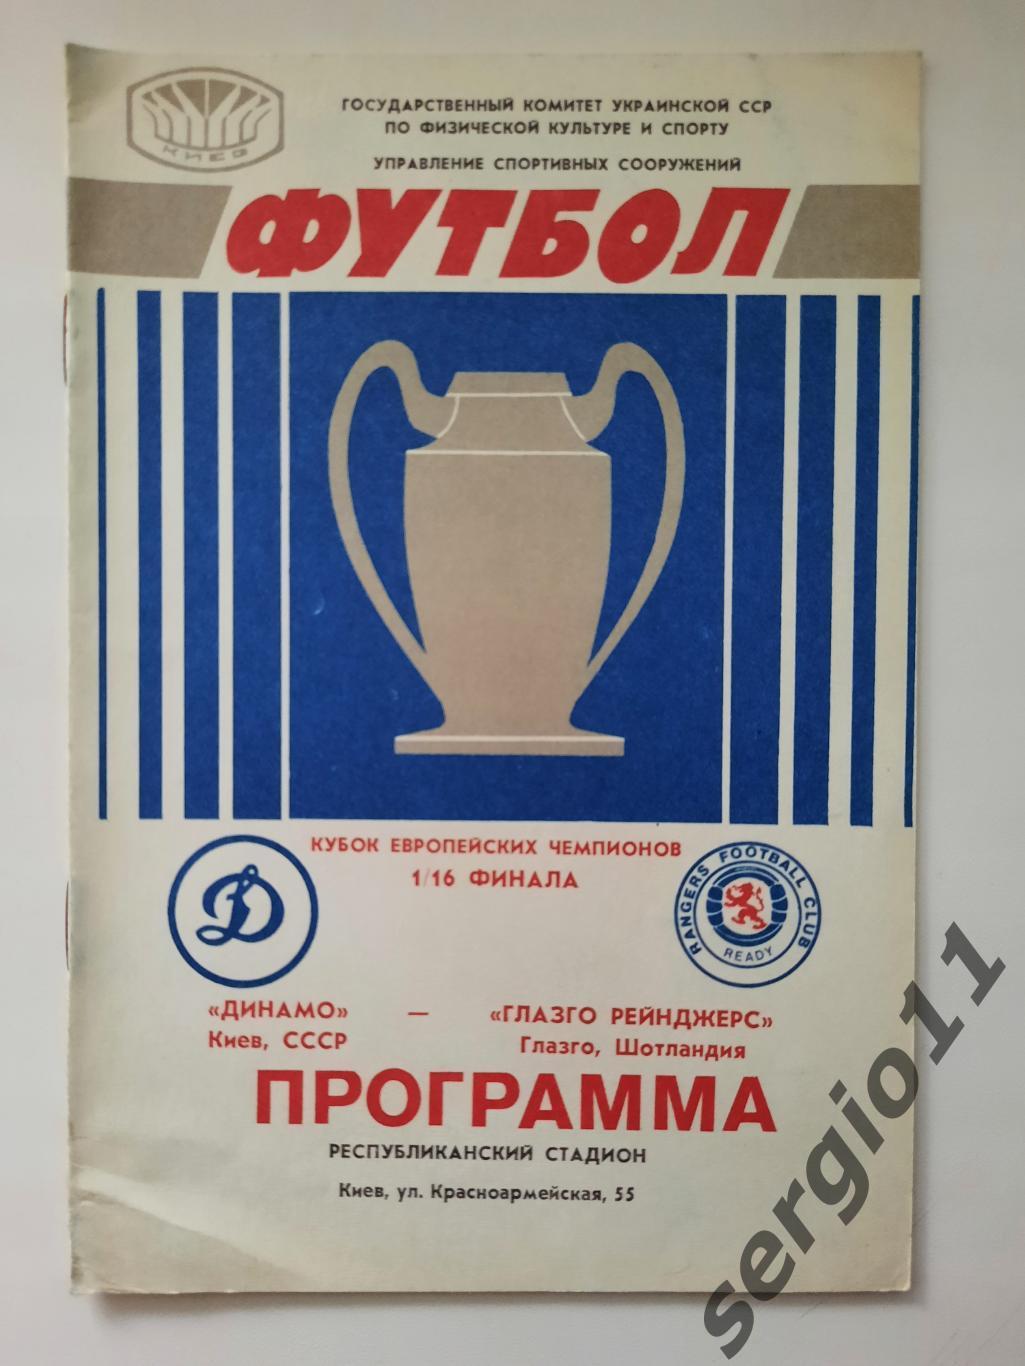 Динамо Киев - Глазго рейнджерс Шотландия 16.09.1987 г. 1/16 финала КЧ